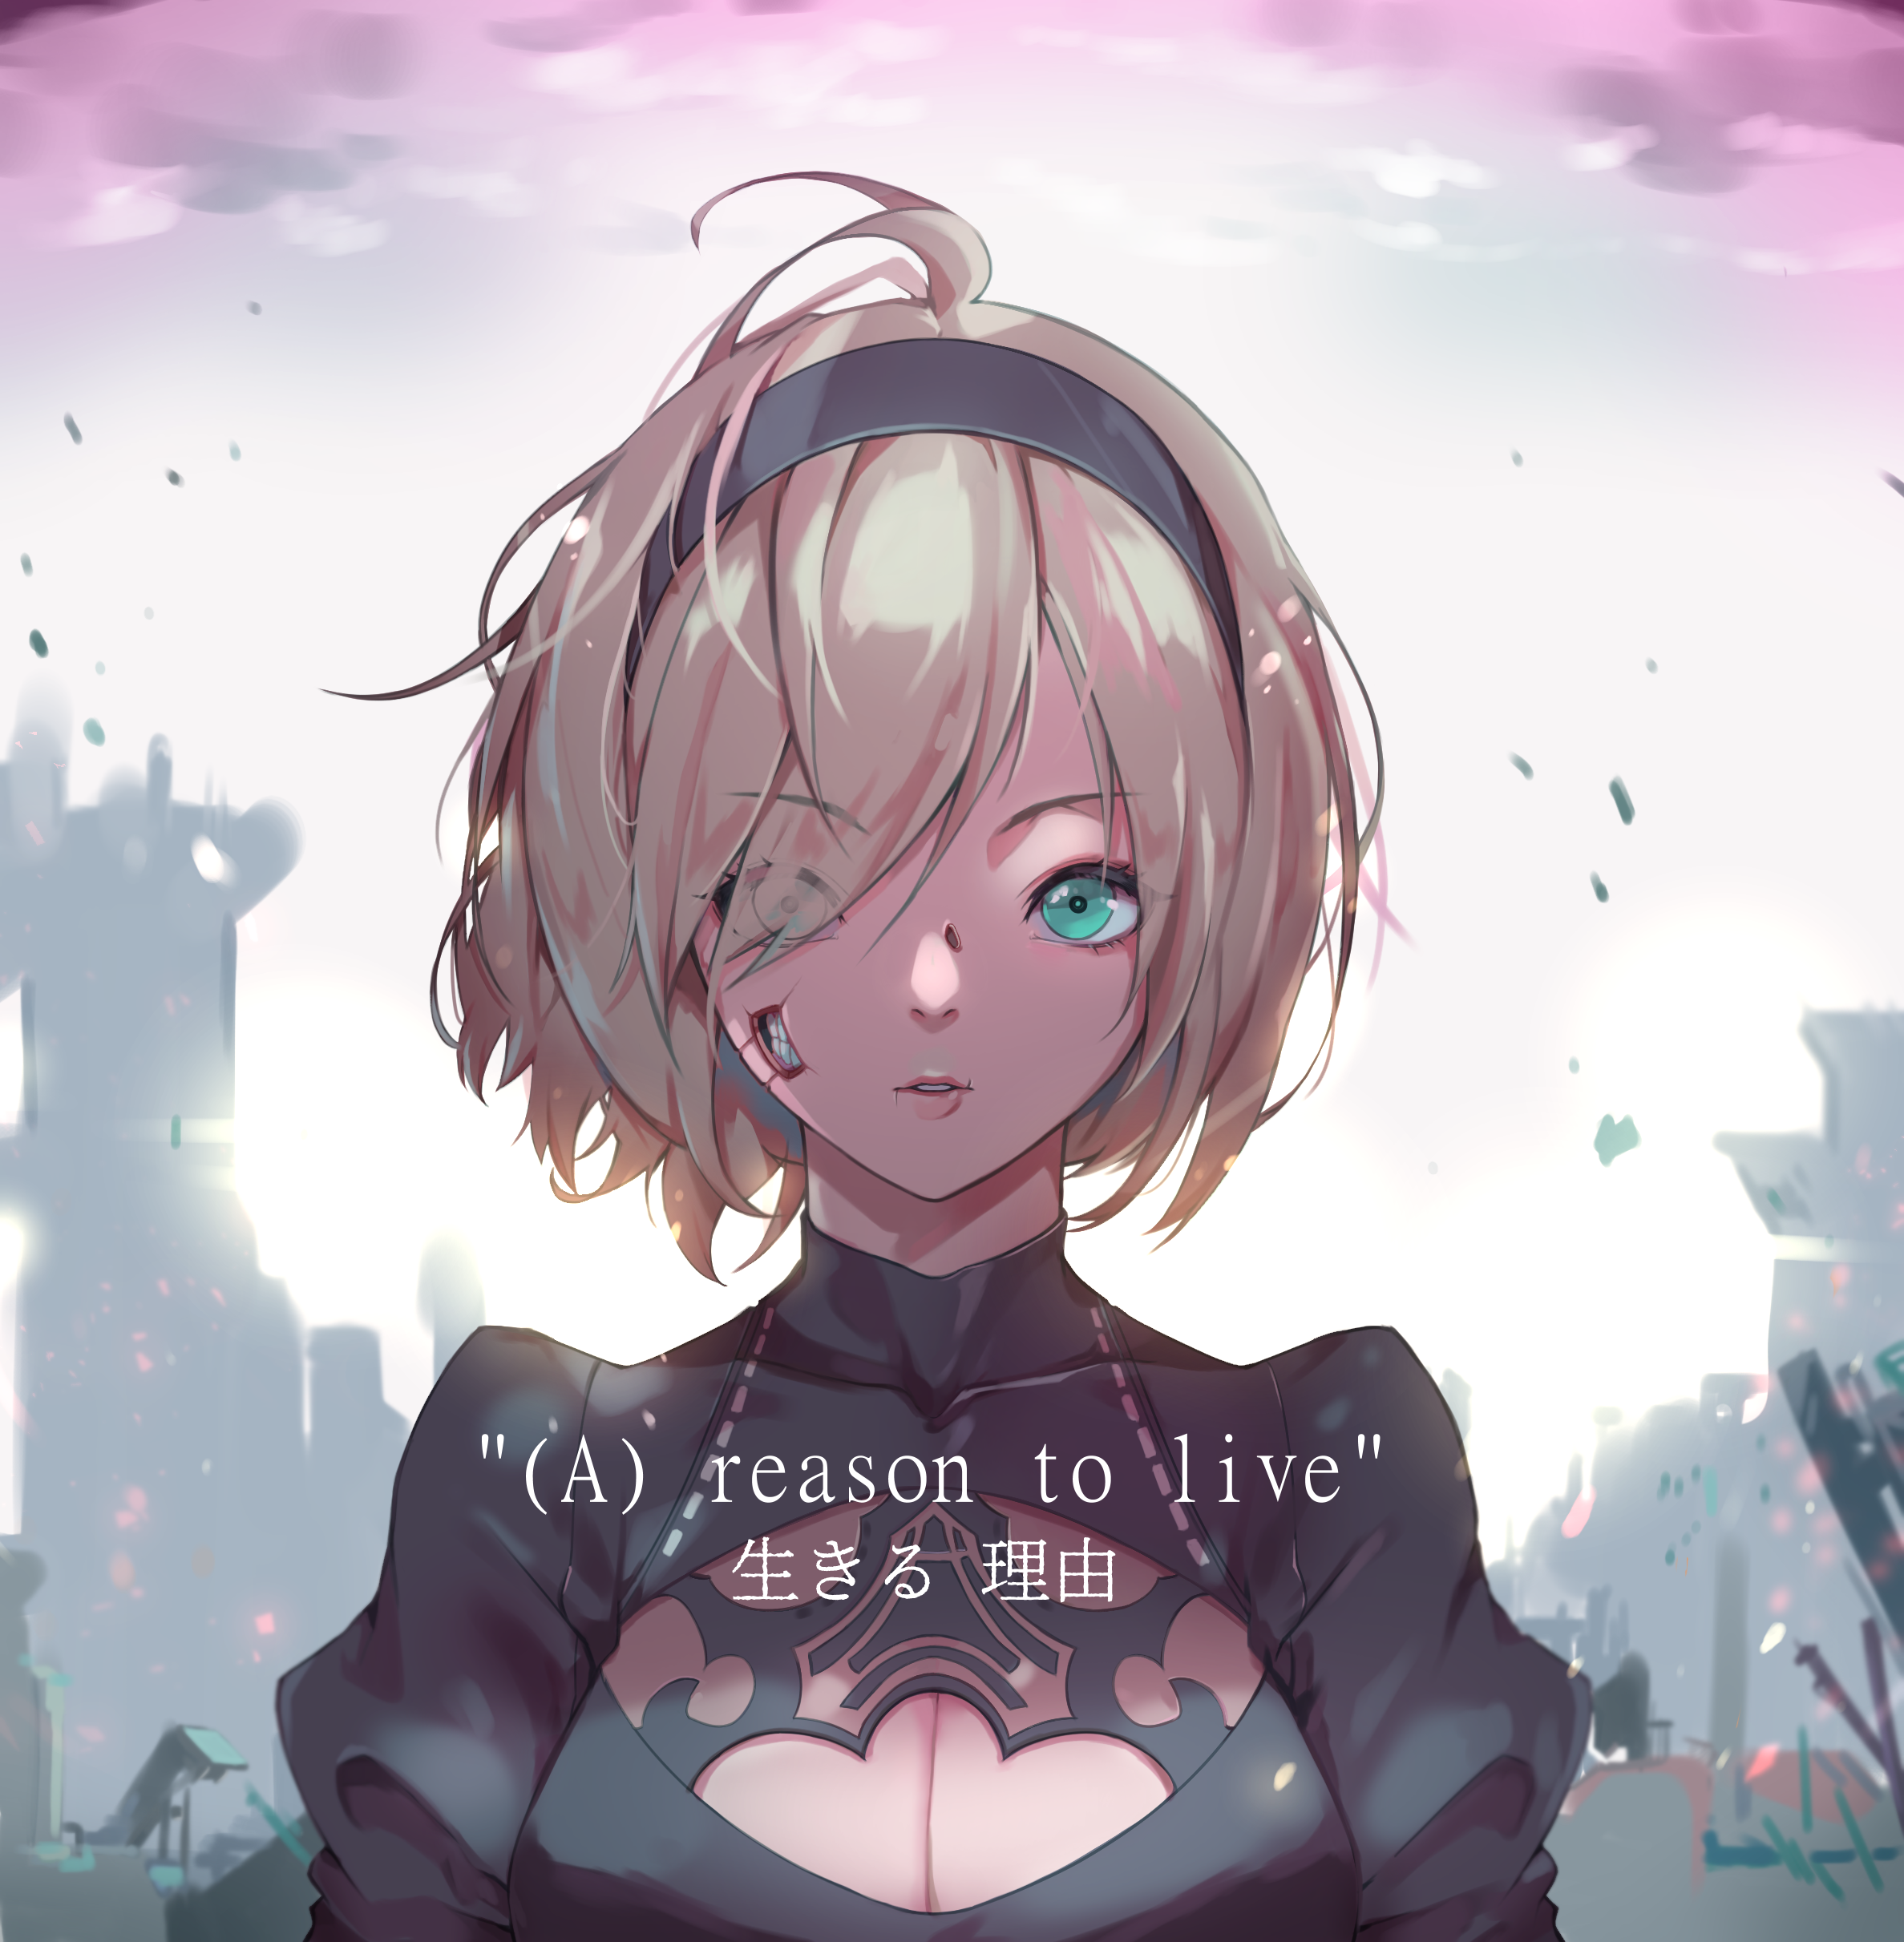 (A) reason to live